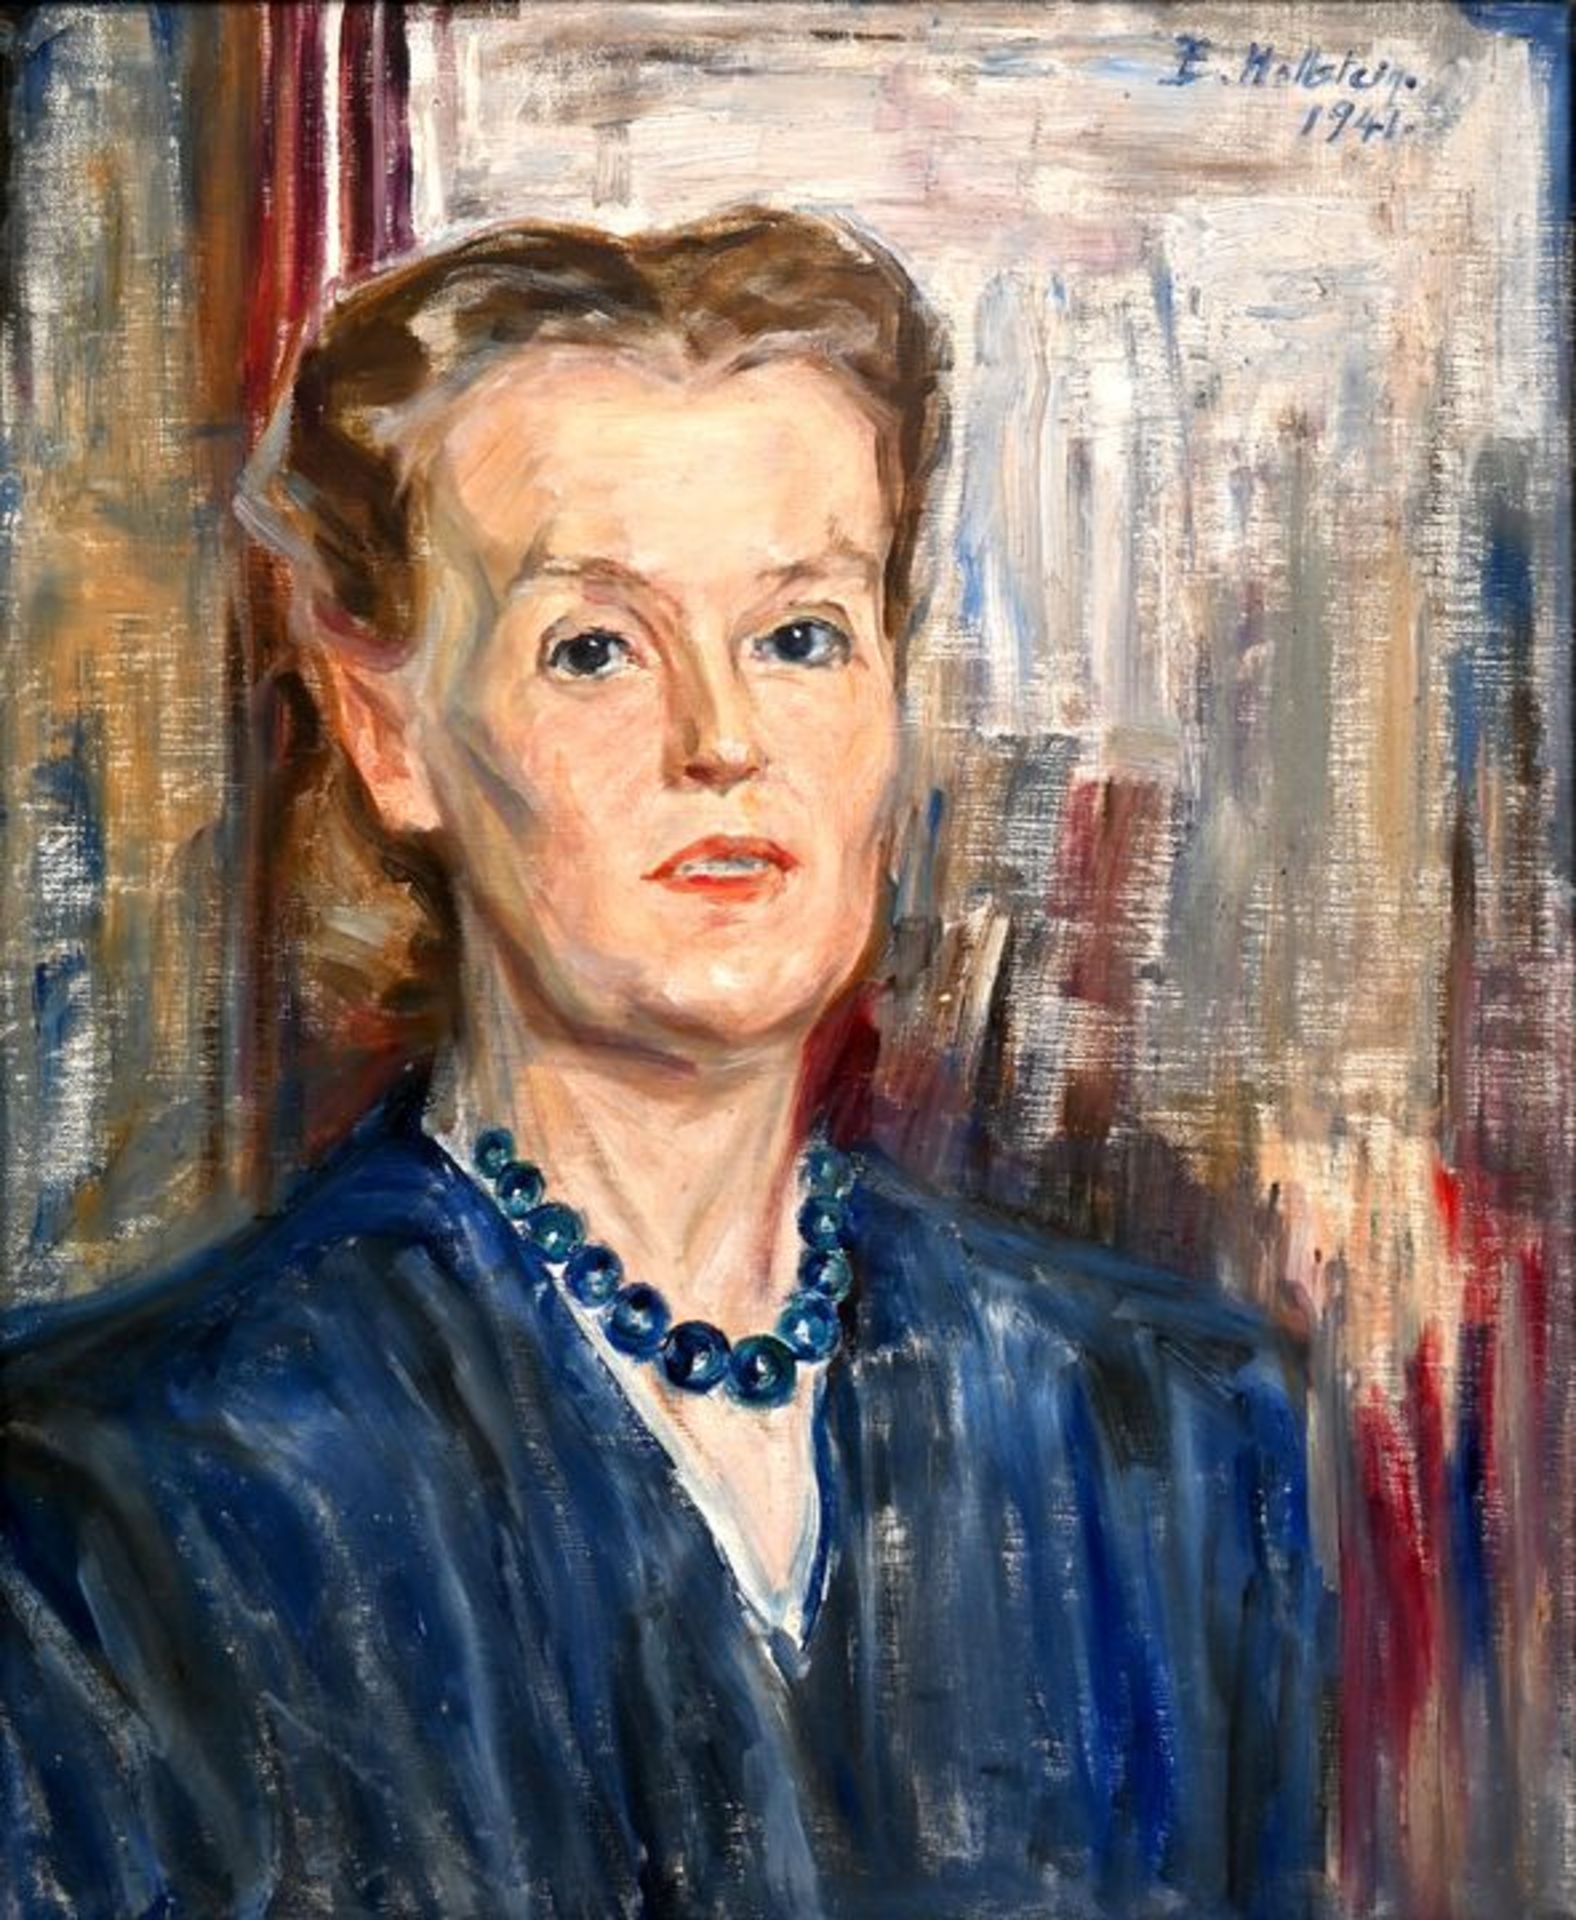 Hoolstein, Emma Gemälde Porträt / portrait